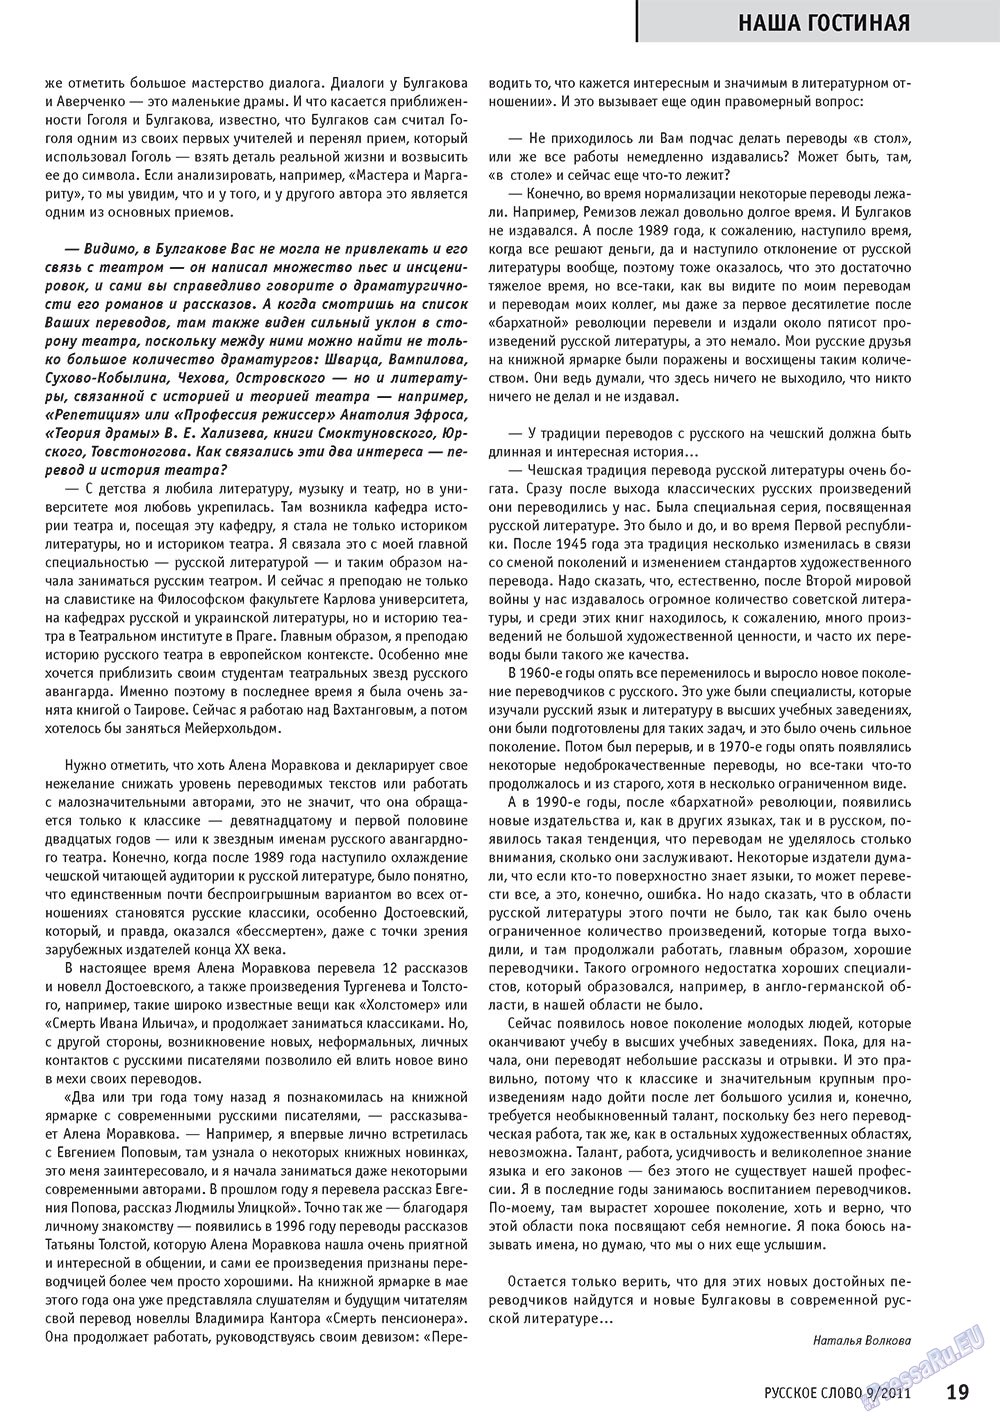 Русское слово, журнал. 2011 №9 стр.21